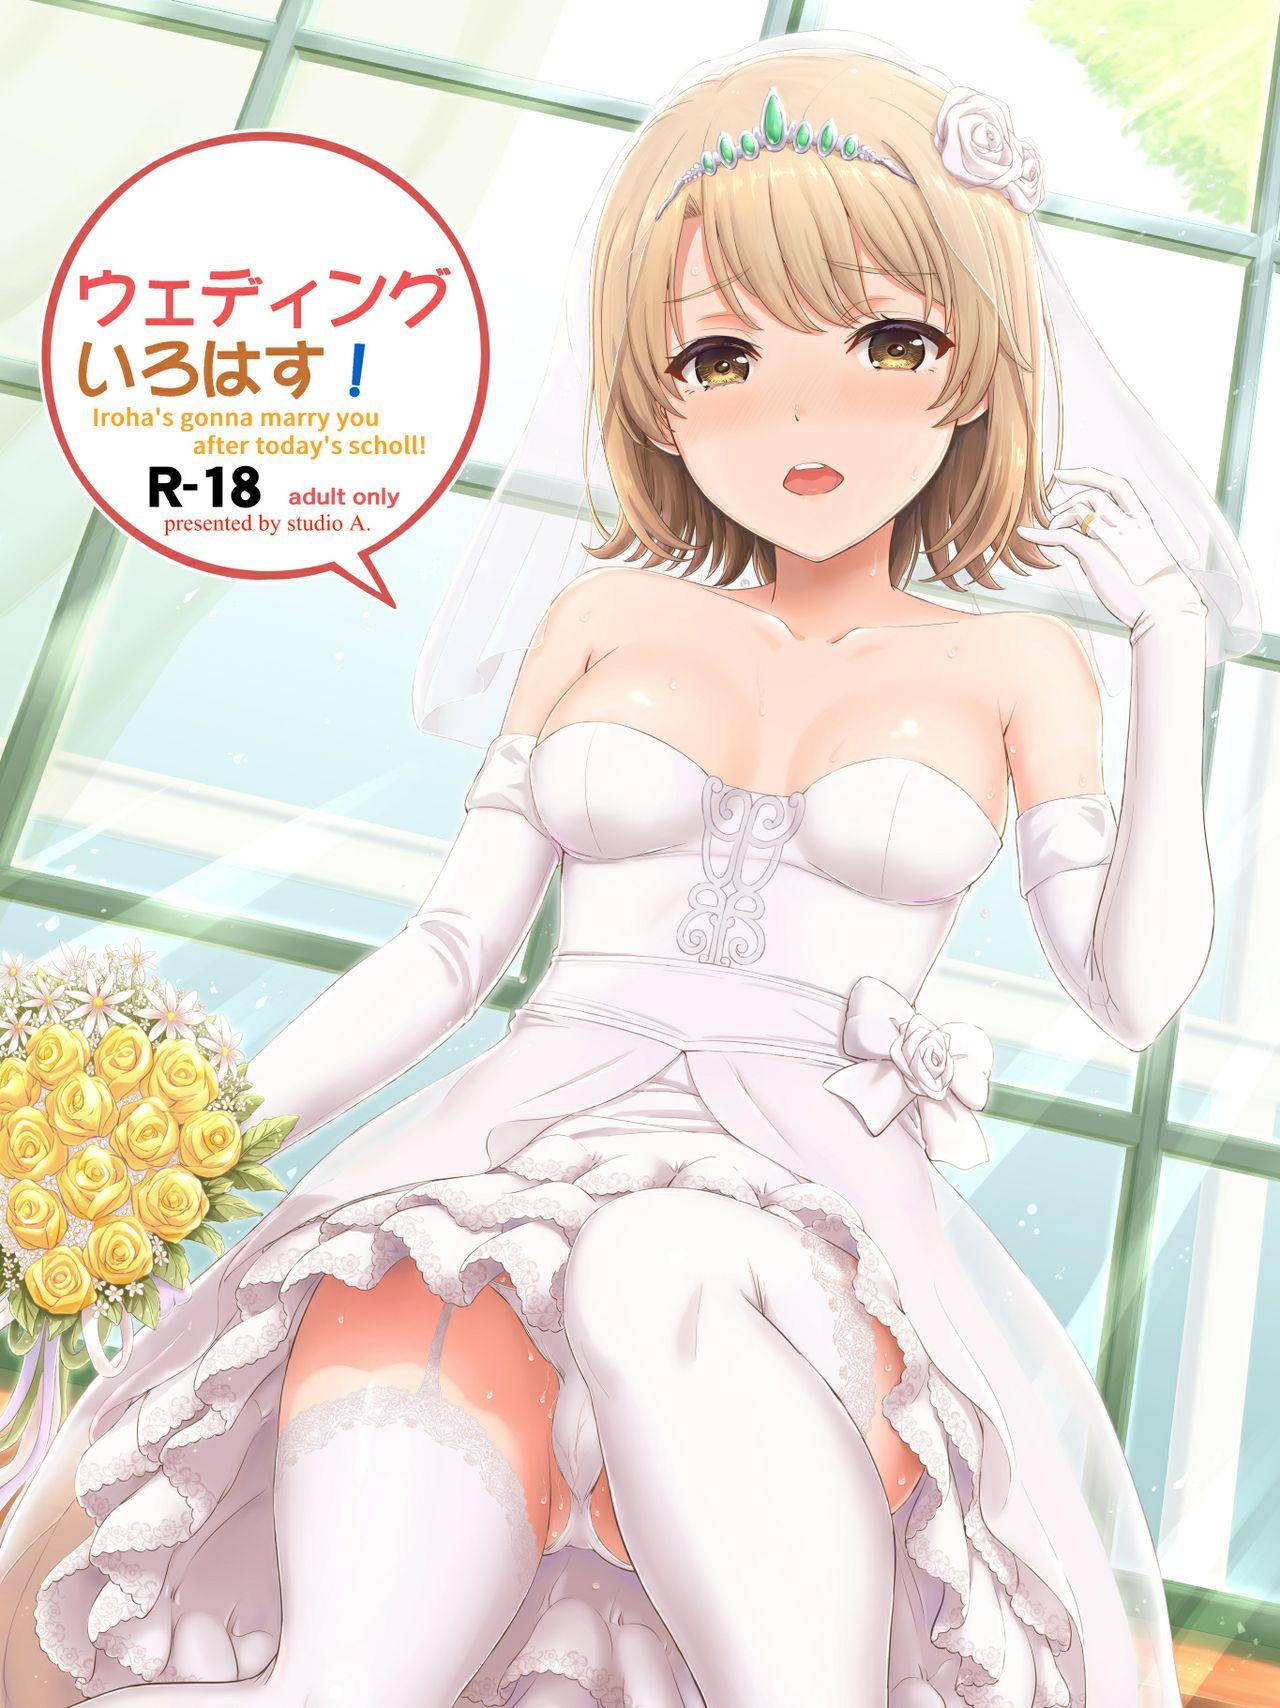 Anime Wedding Irohasu! - Yahari ore no seishun love come wa machigatteiru Safado - Page 2